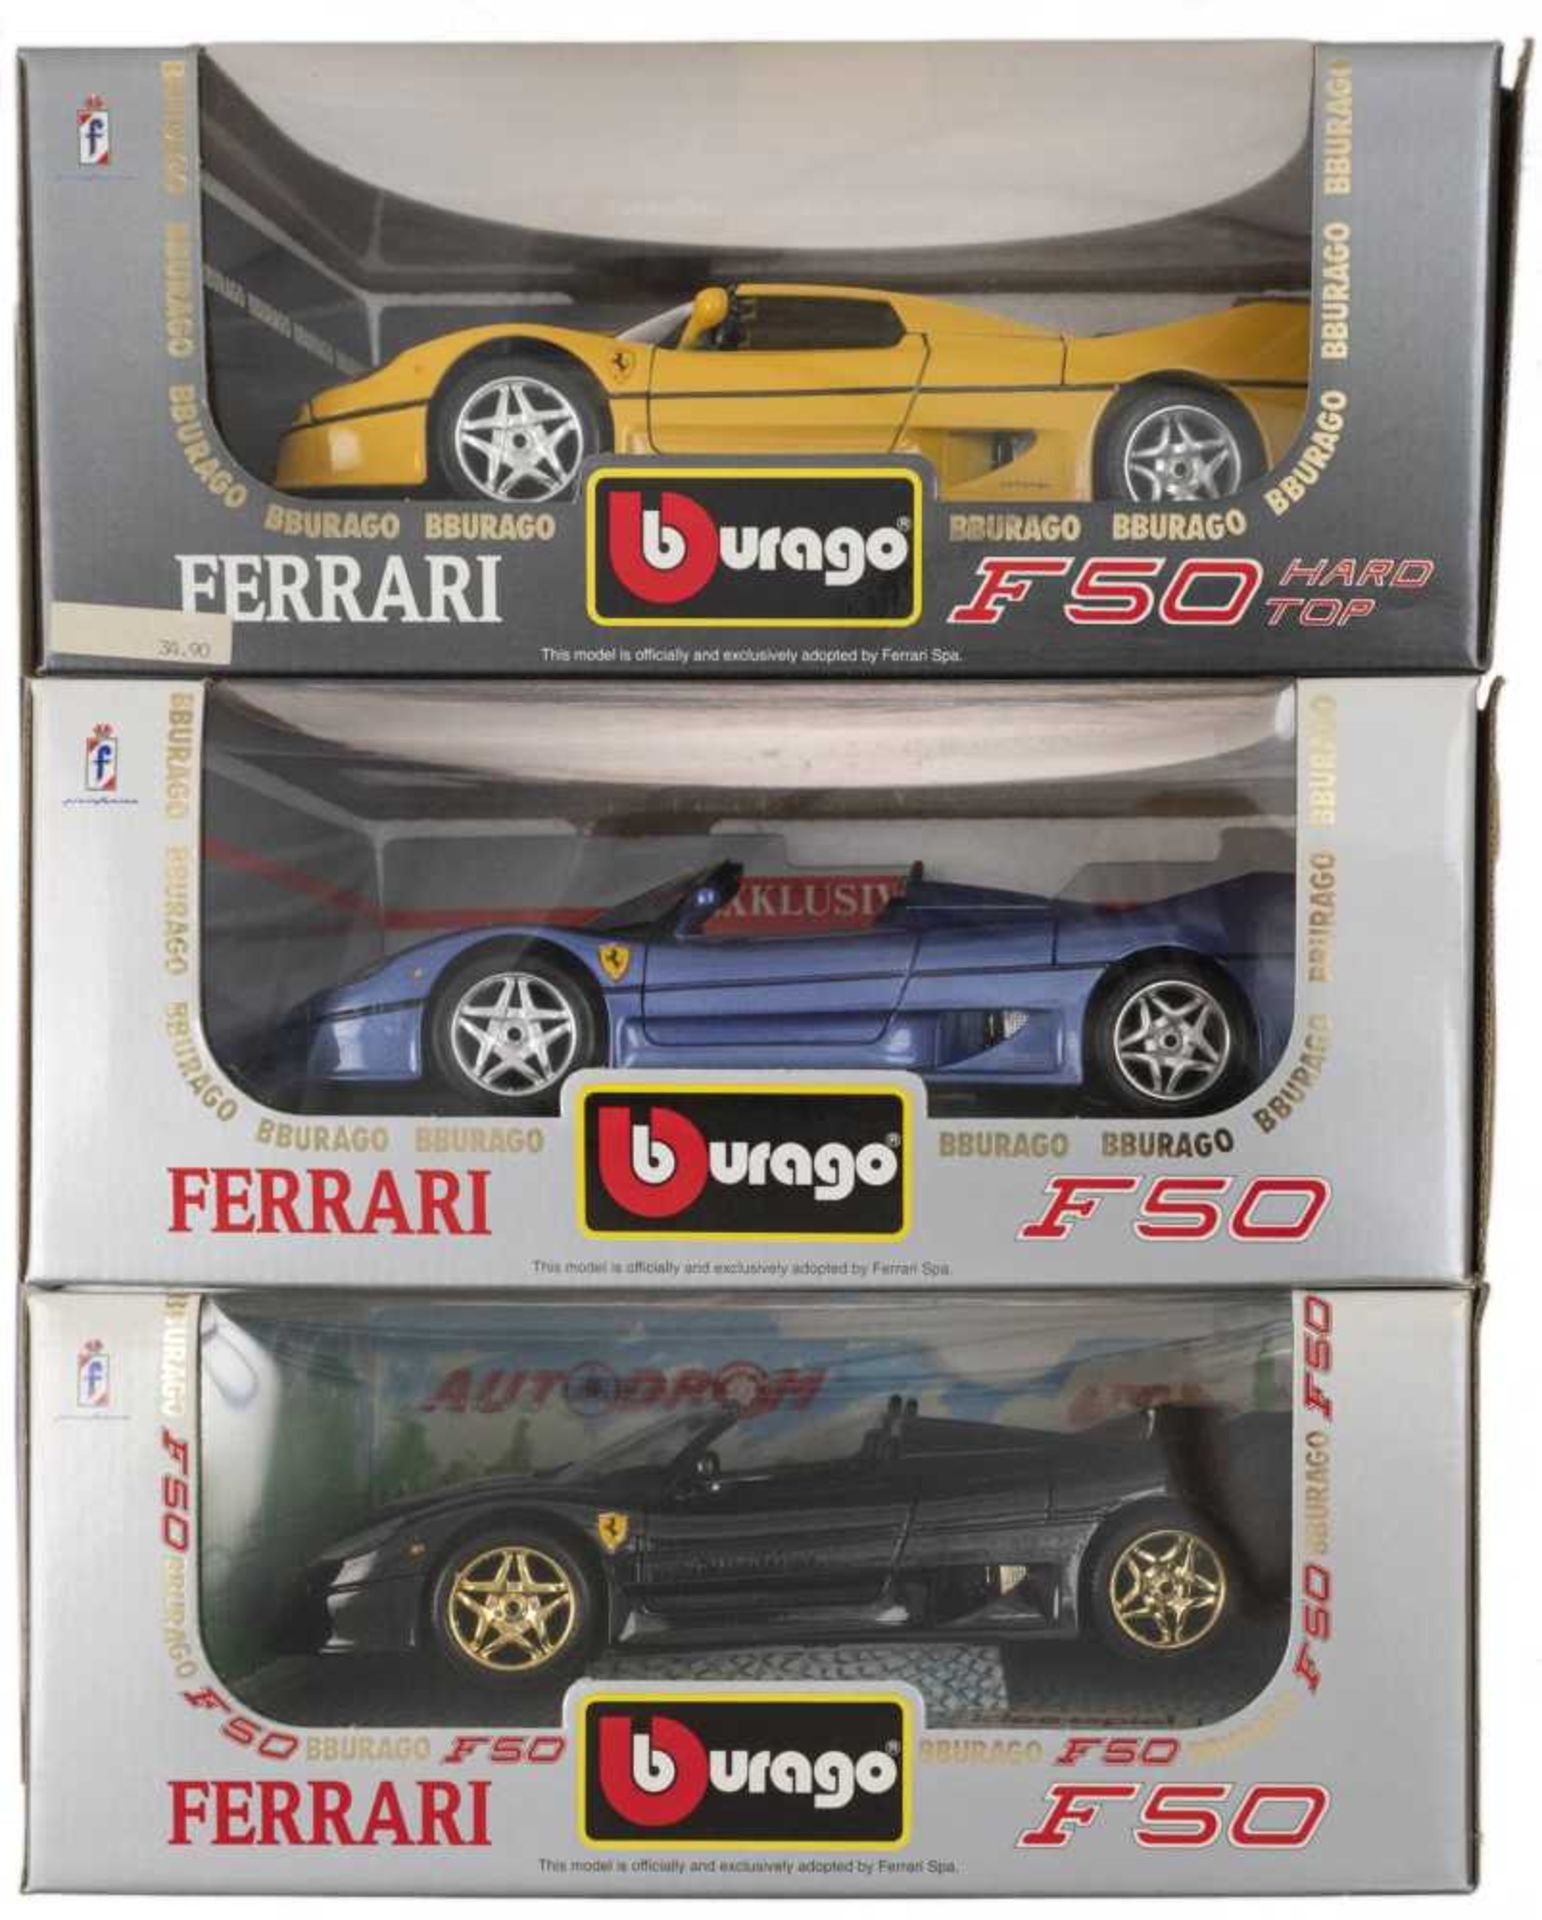 FERRARI F50, versch versch. Varianten in gelb, rot, schwarz (Sondermodell Idee & Spiel) sowie blau (